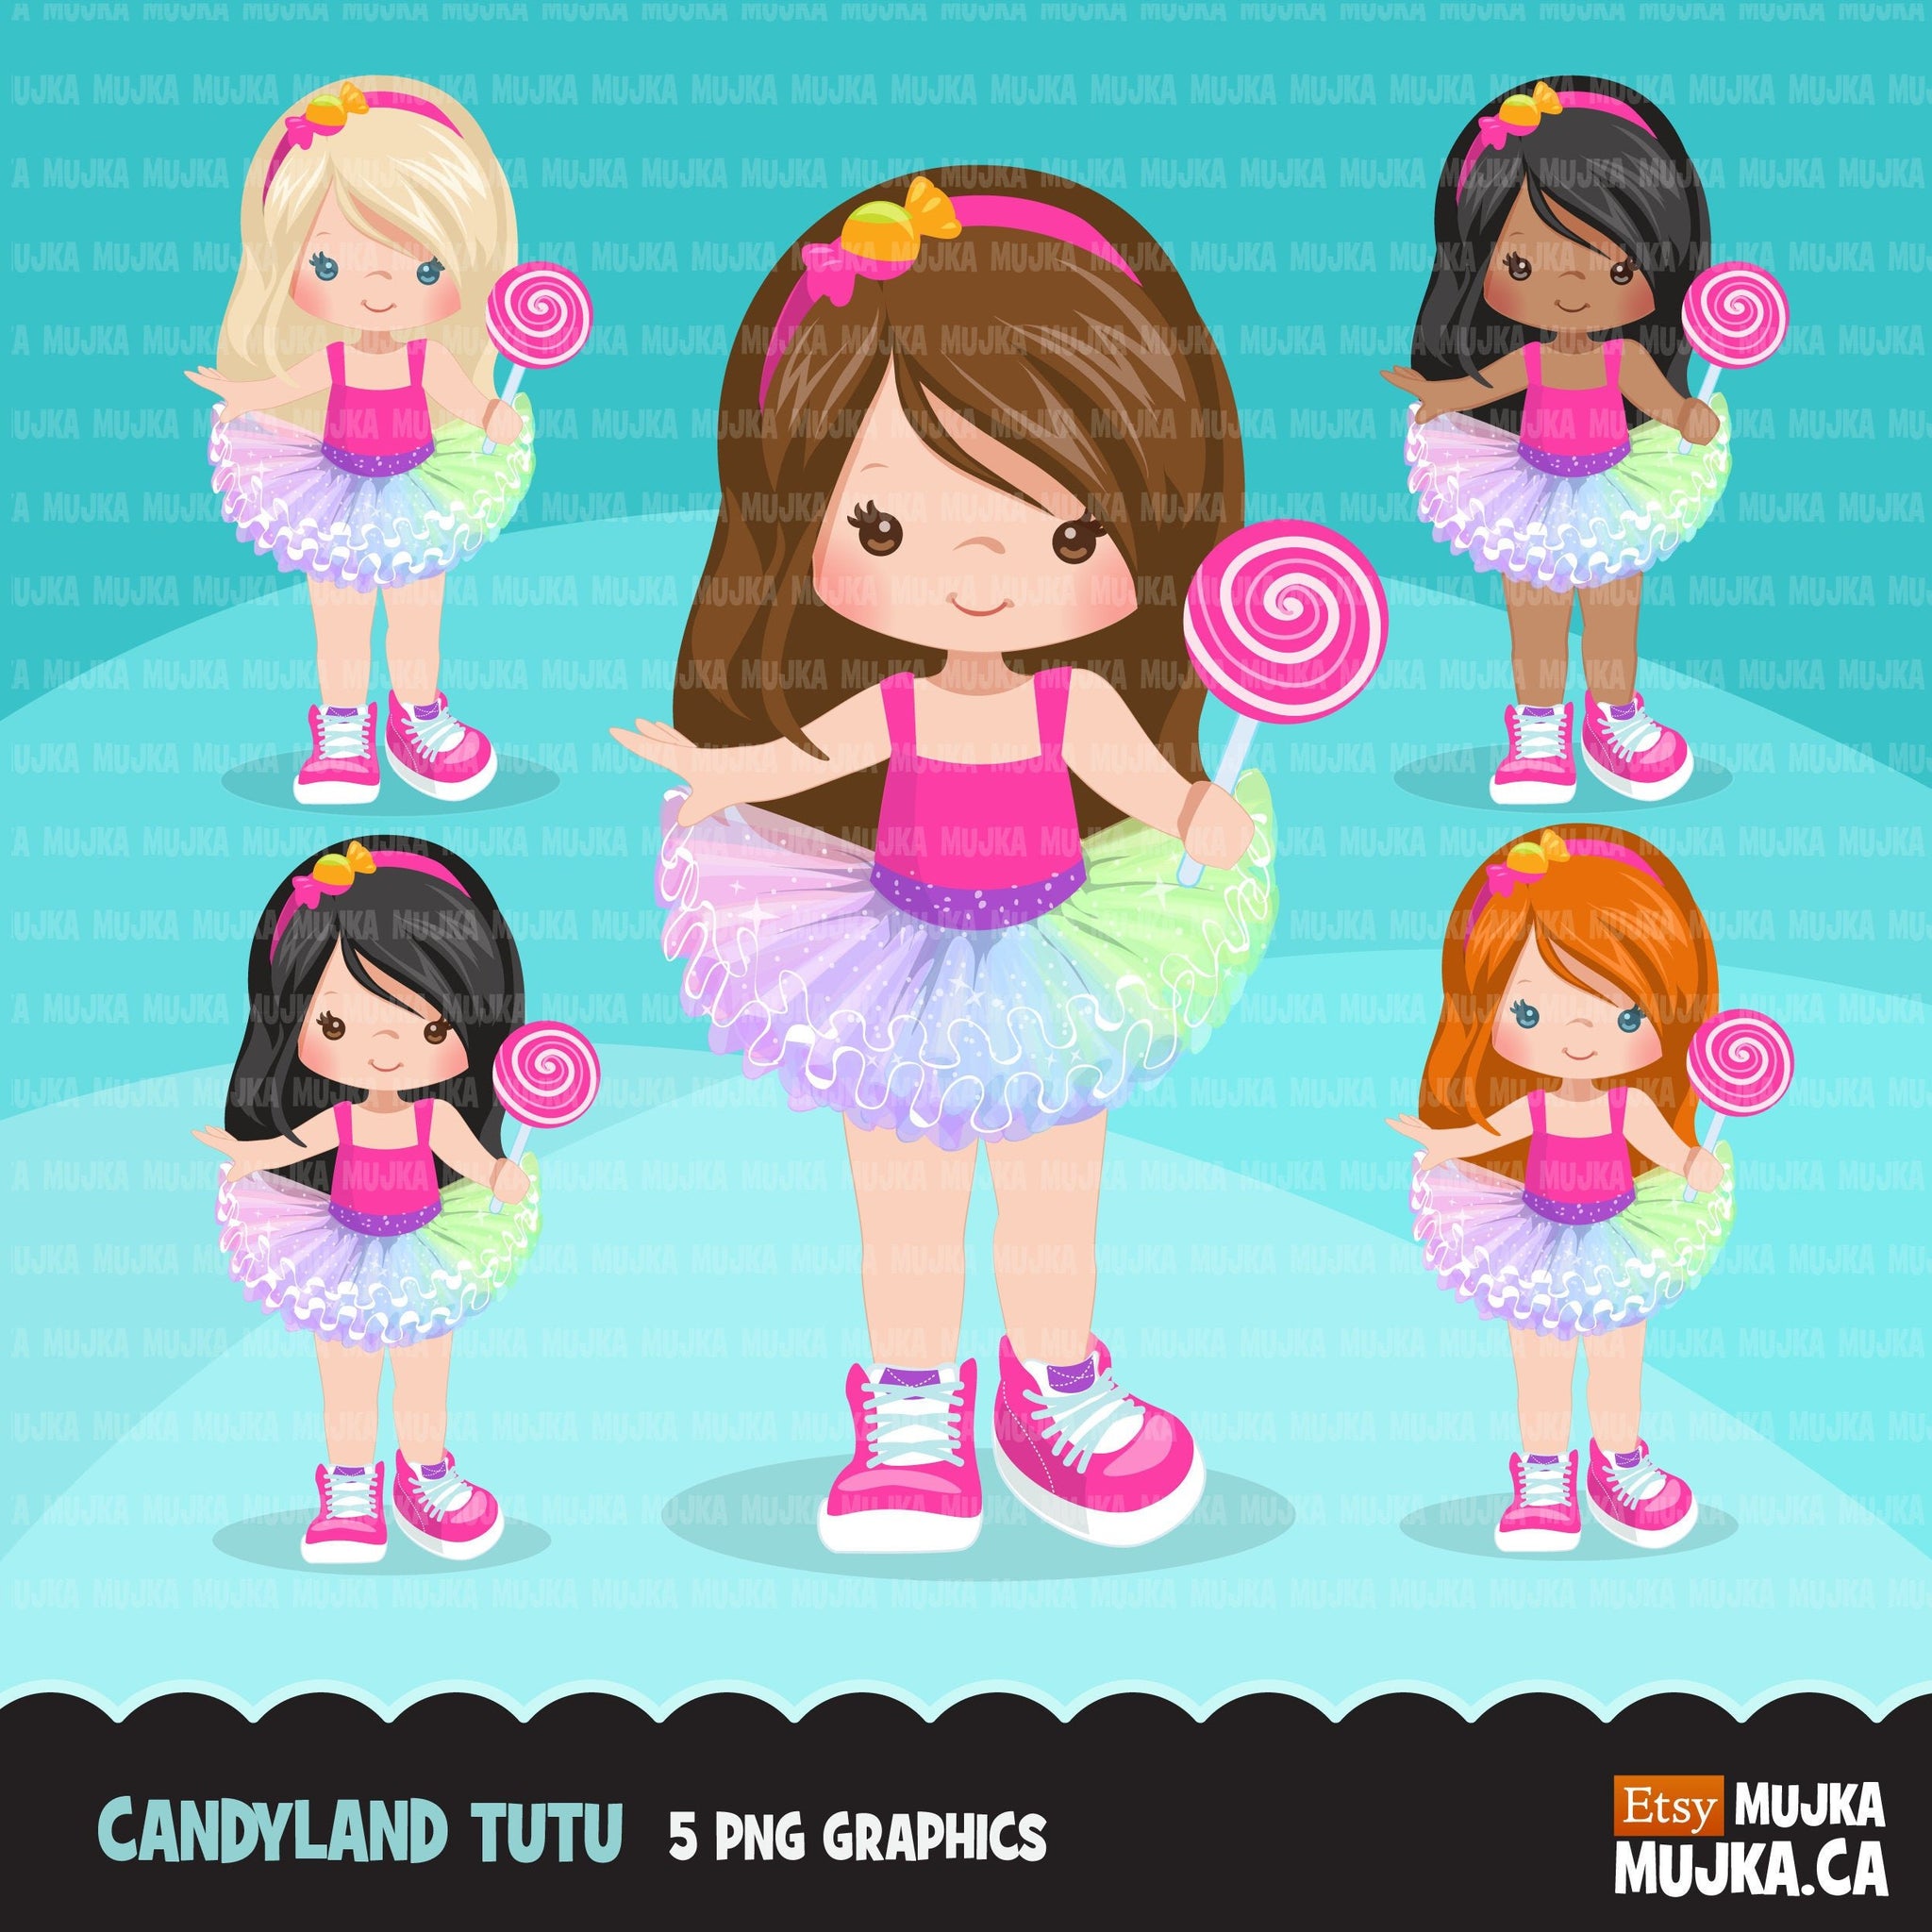 Candy land Tutu Clipart para niñas, gráficos de tutú arco iris de piruleta, moda, uso comercial PNG clip art, recorte de cumpleaños